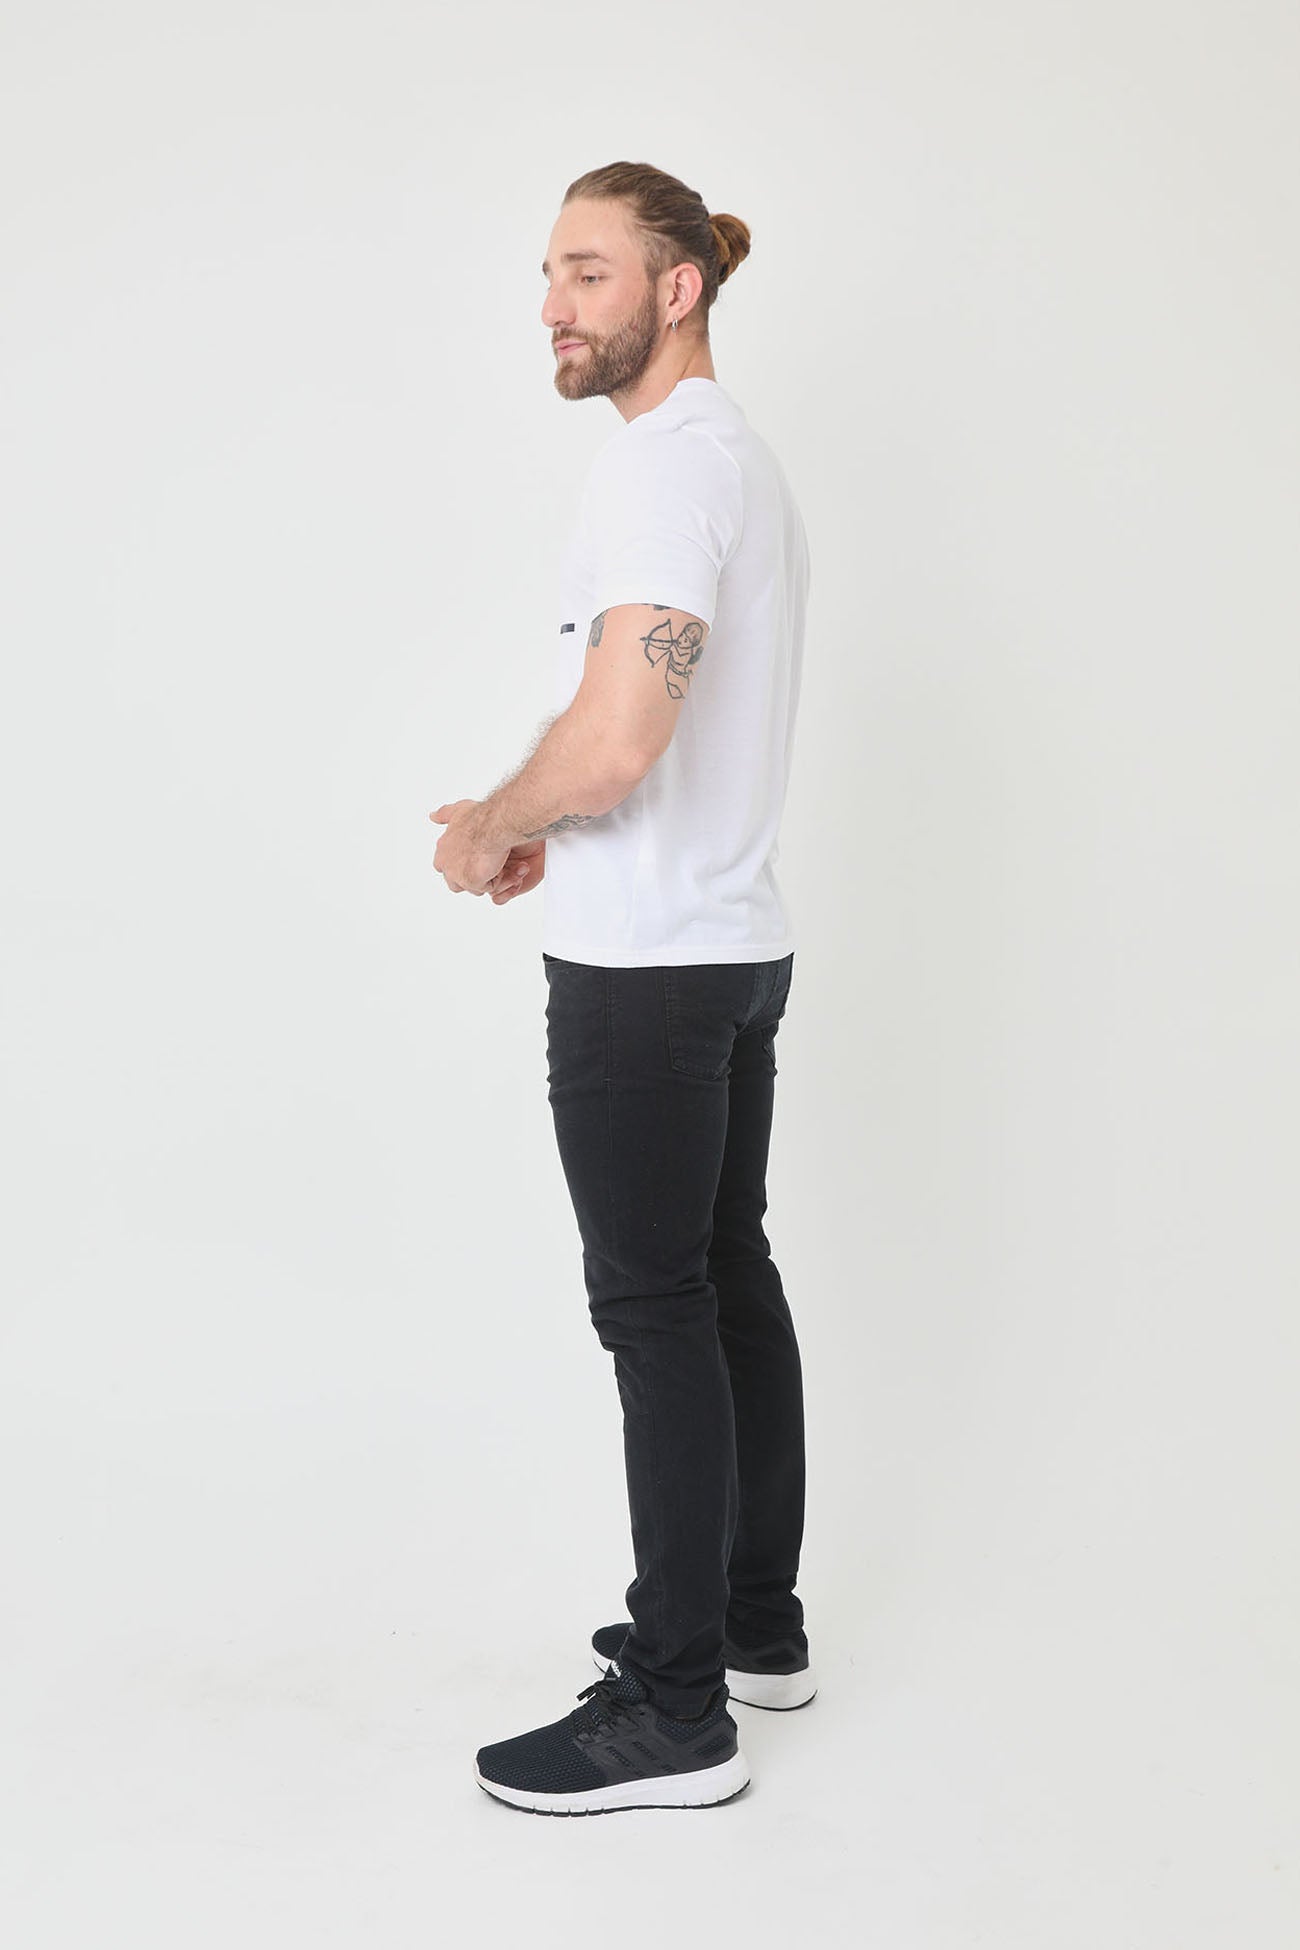 Camiseta blanco hueso manga corta, estampados en frente y cuello redondo para hombre